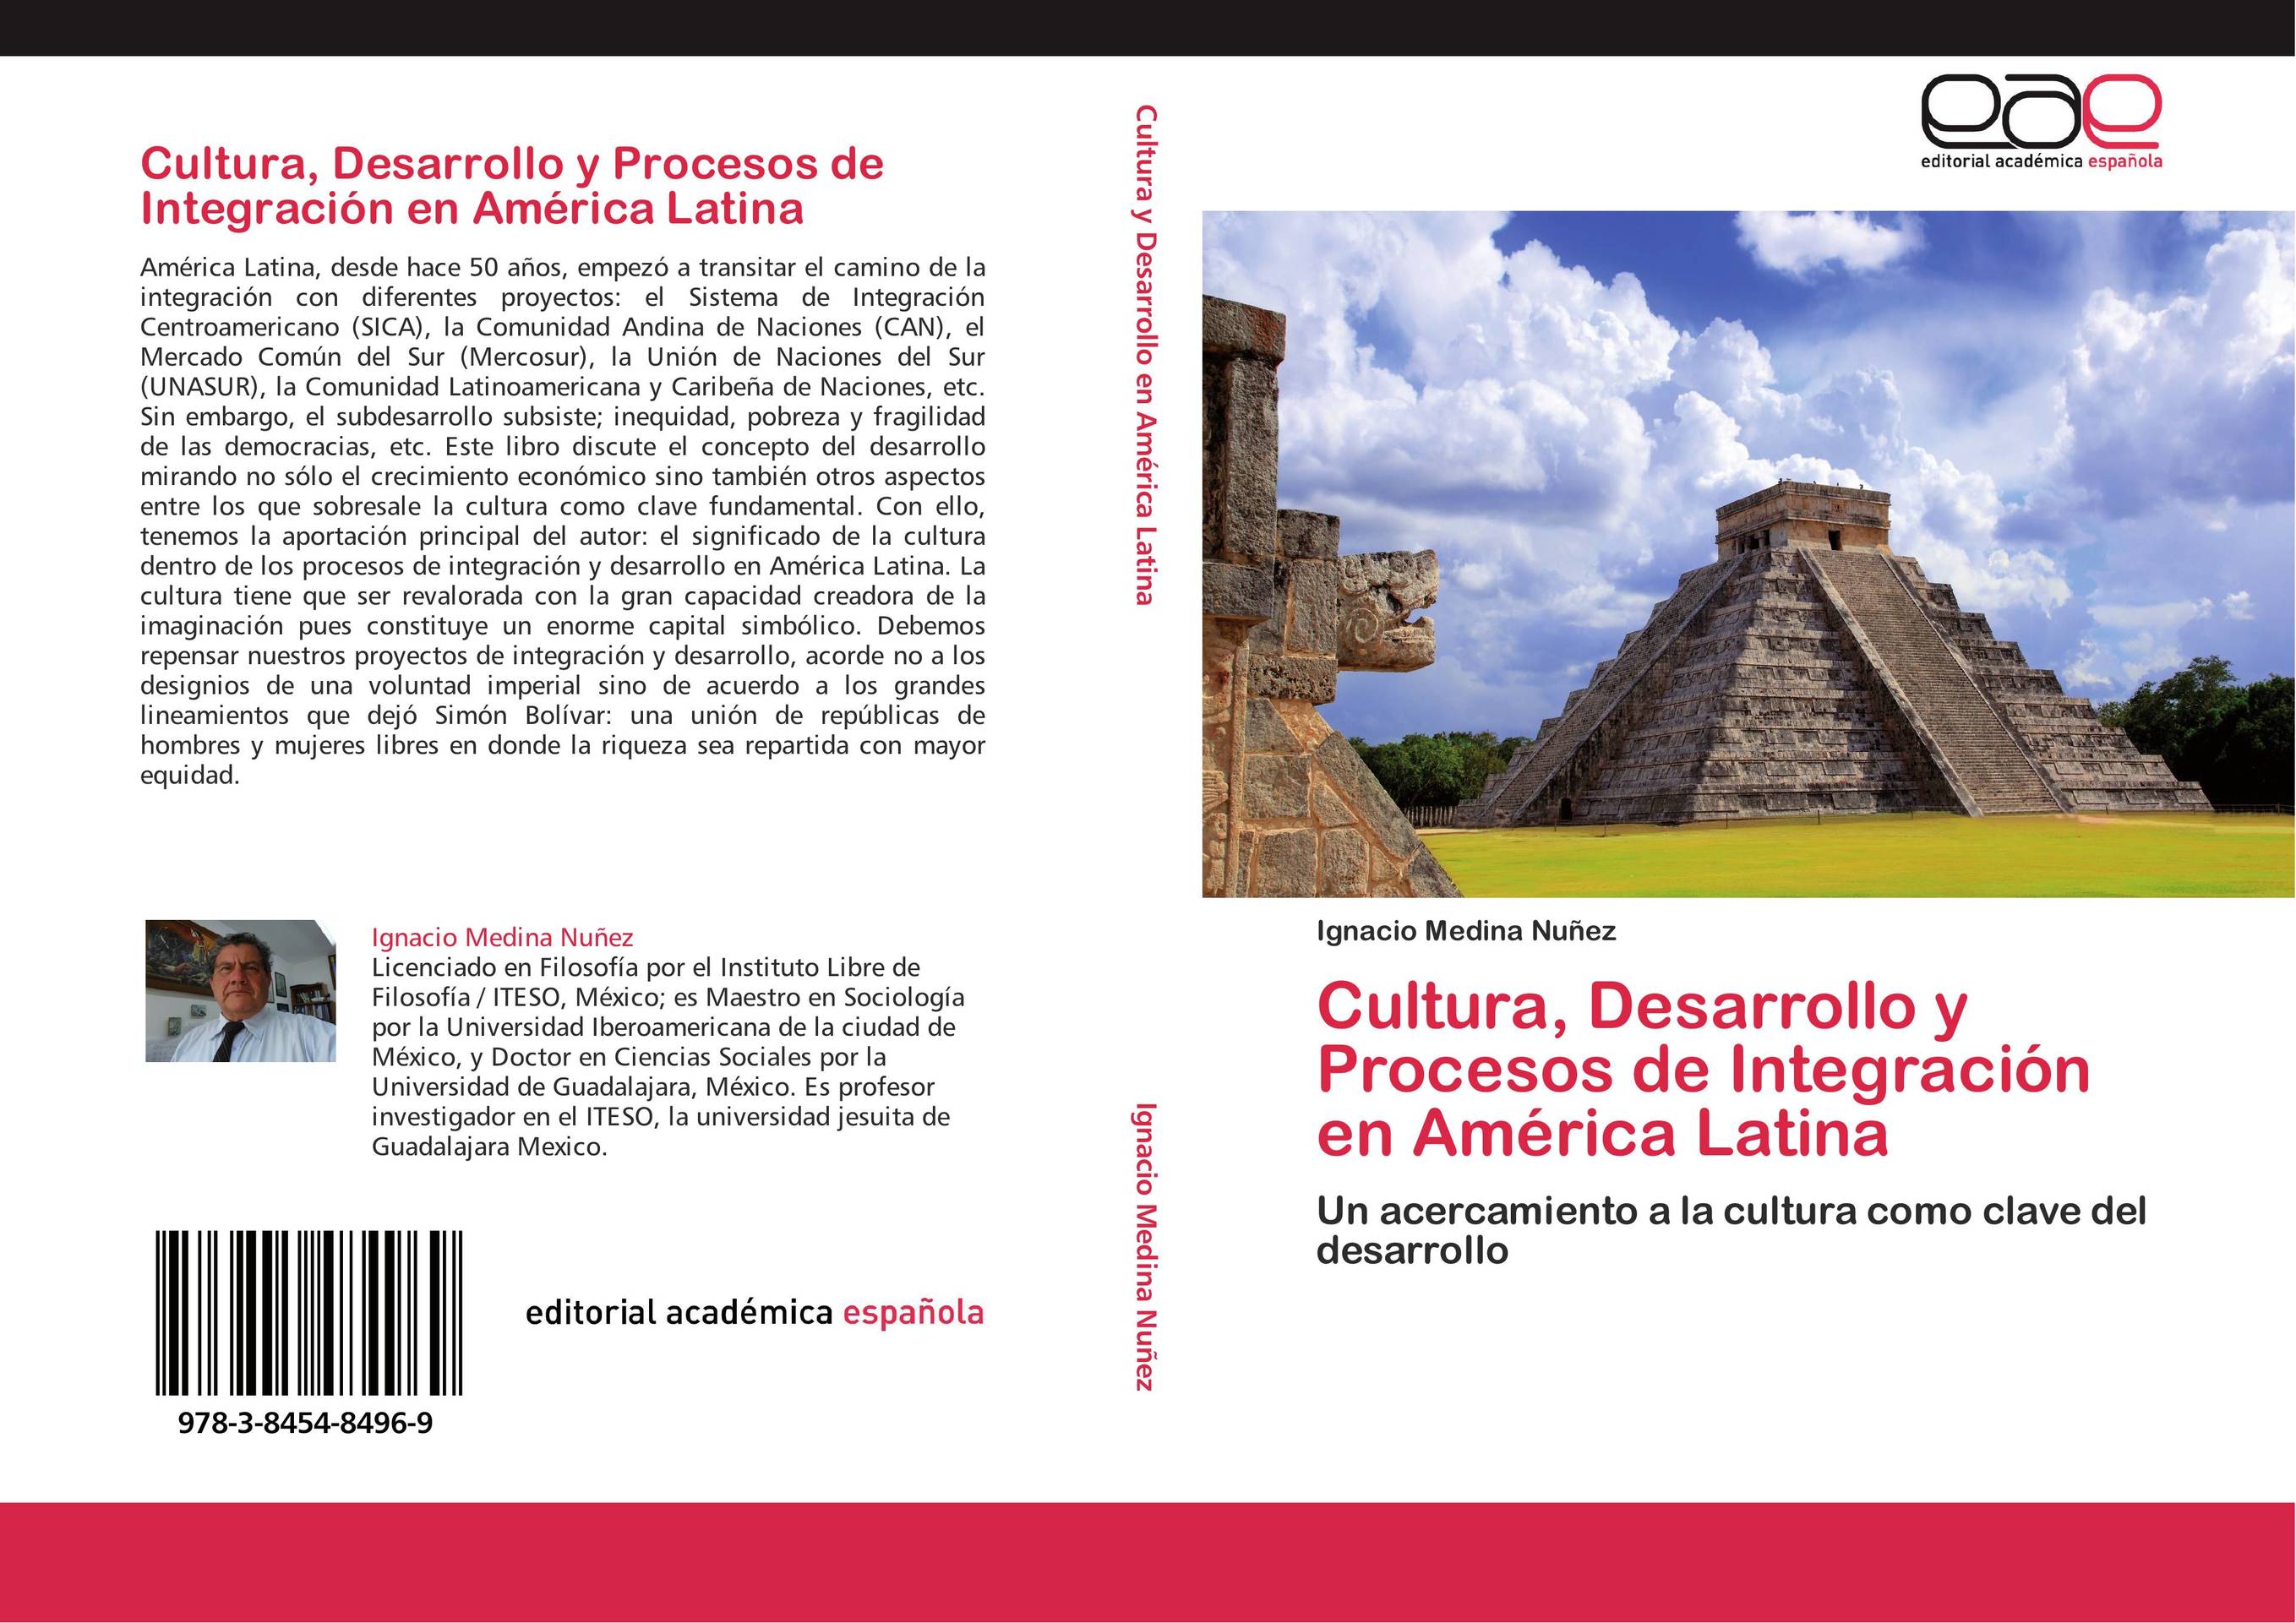 Cultura, Desarrollo y Procesos de Integración en América Latina